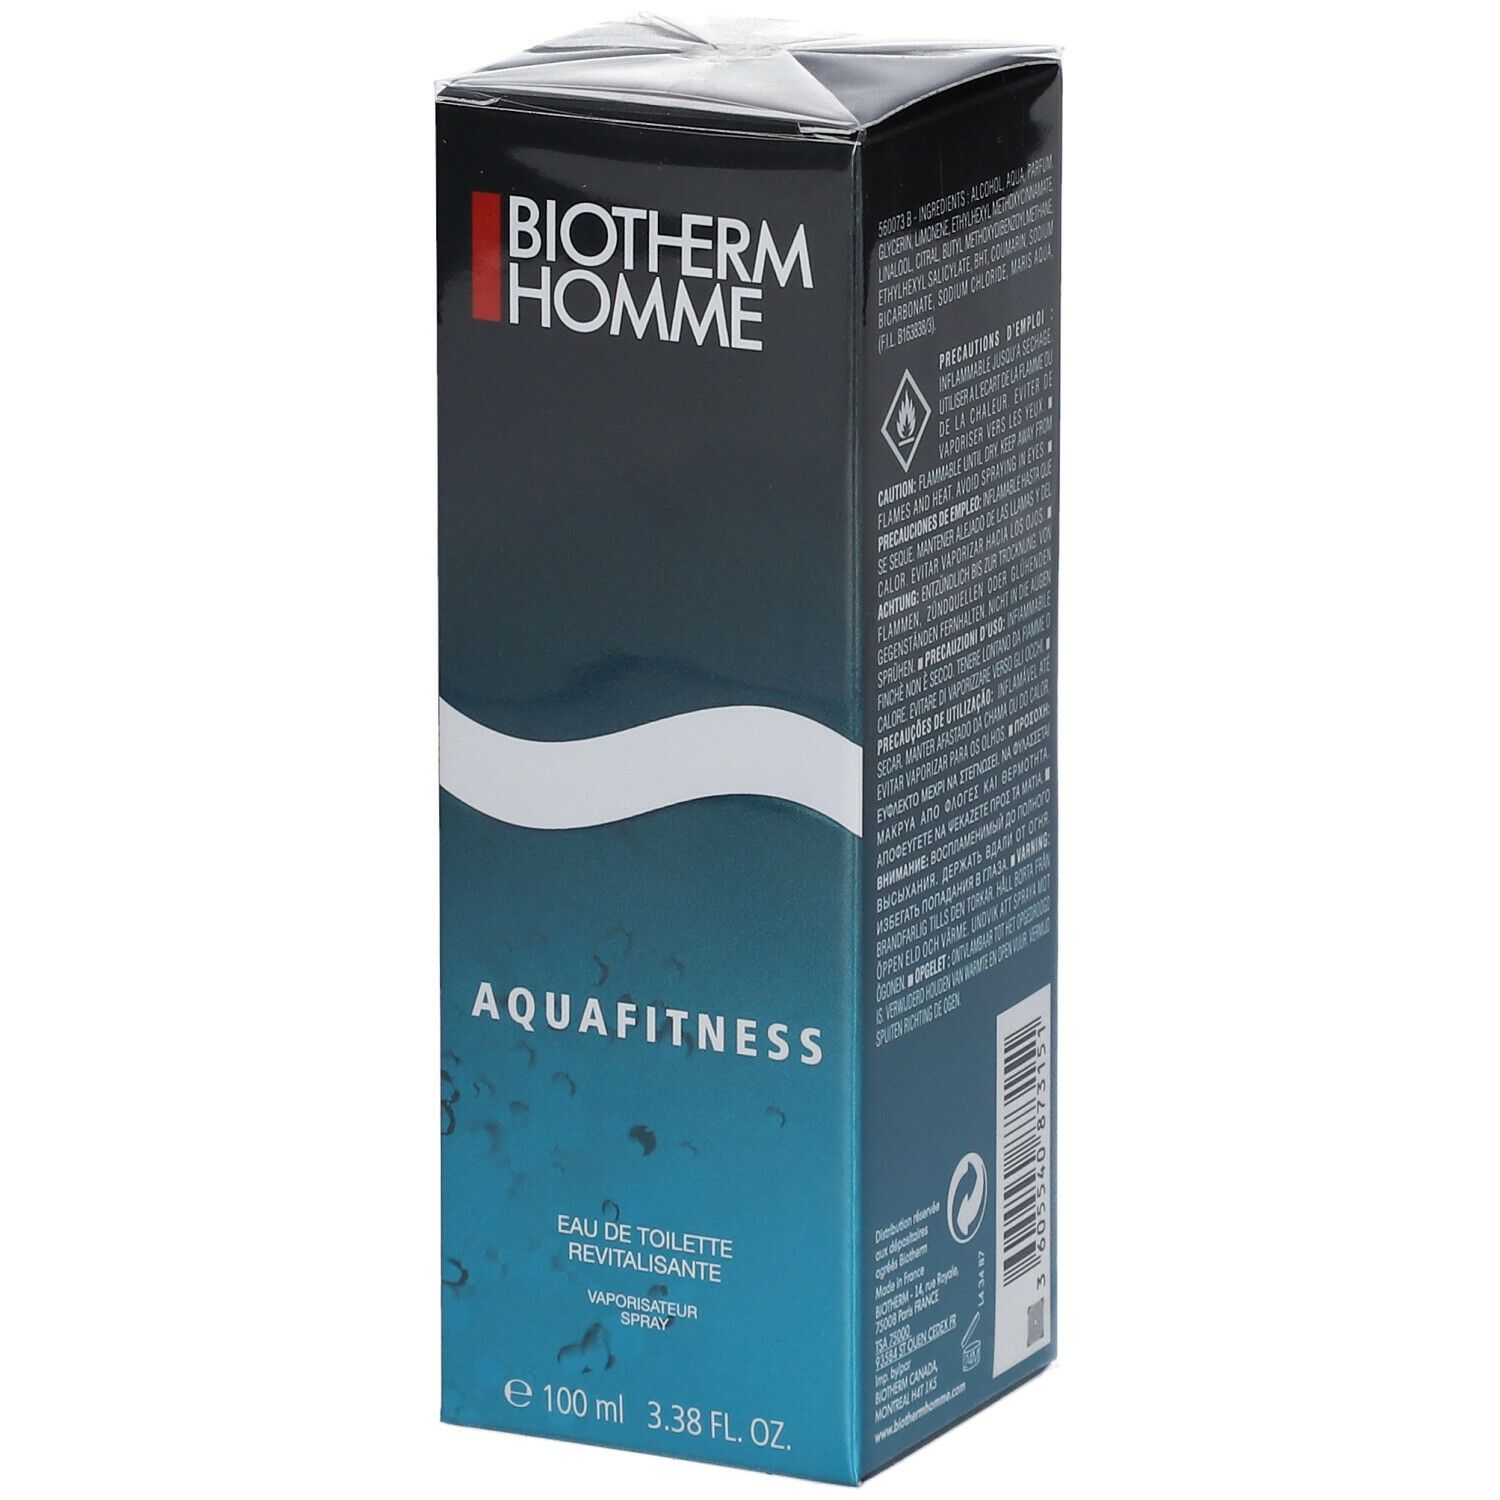 Image of Biotherm HOMME Aquafitness Eau de Toilette